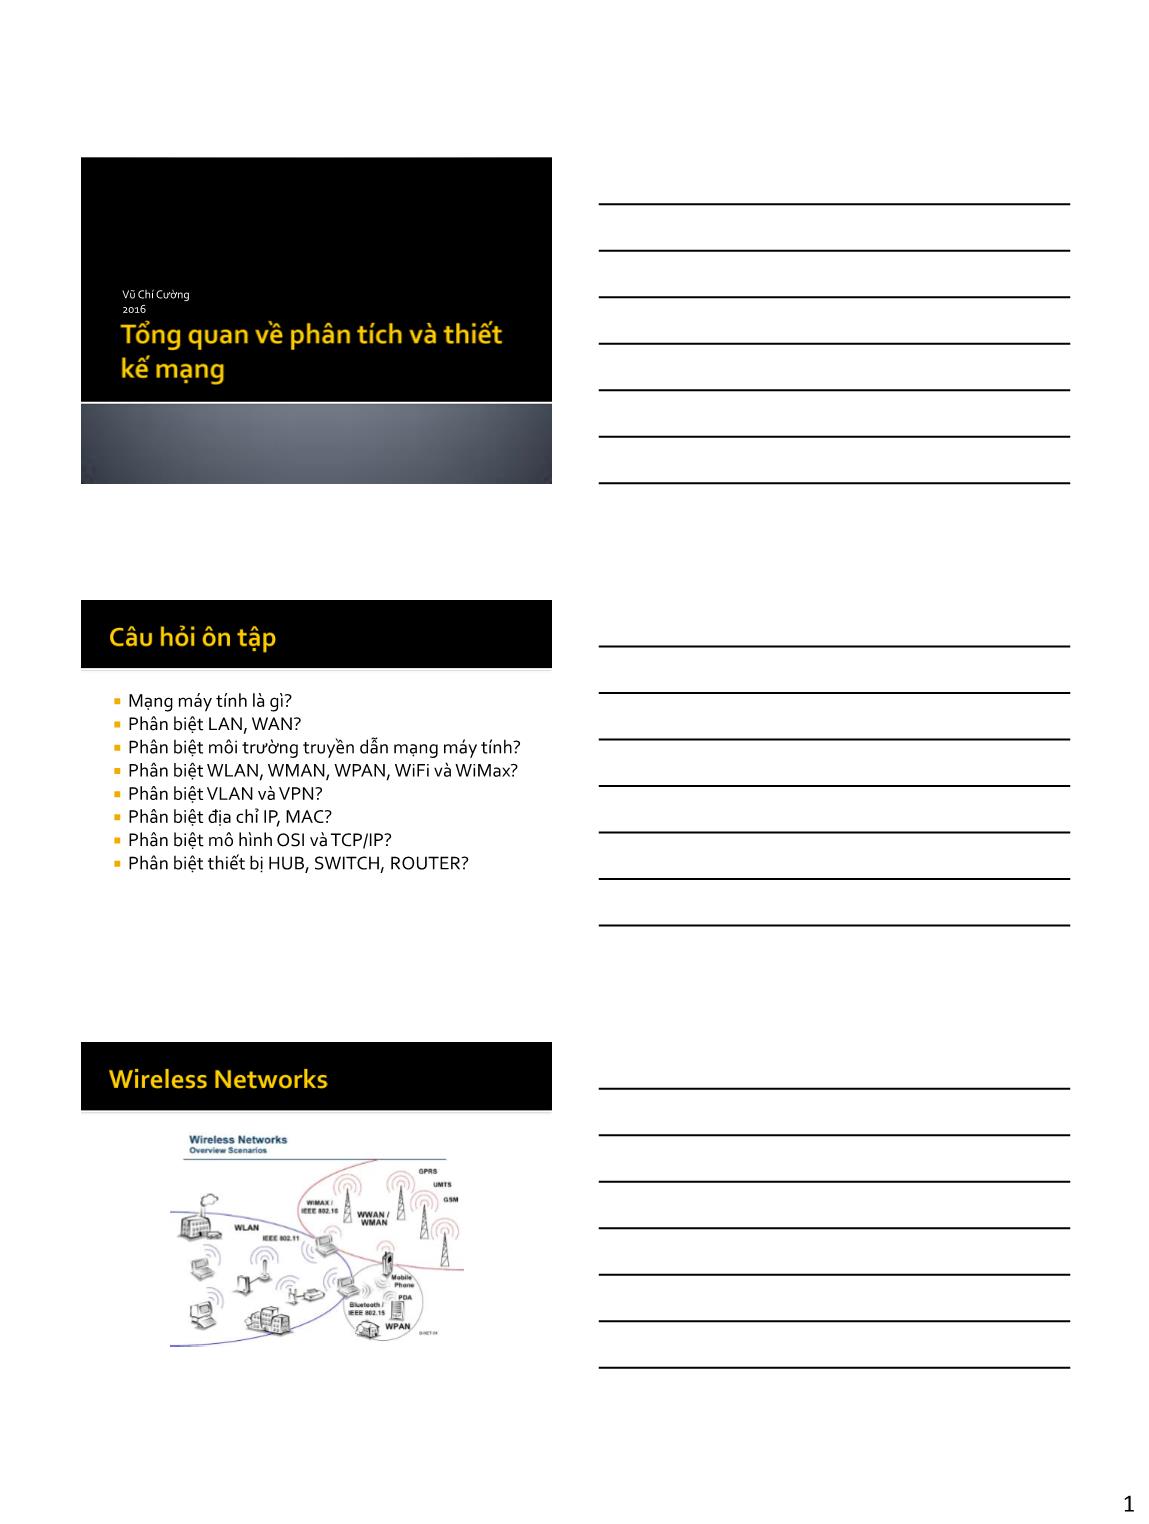 Bài giảng Phân tích và thiết kế mạng - Chương 1: Tổng quan phân tích và thiết kế mạng - Vũ Chí Cường trang 1